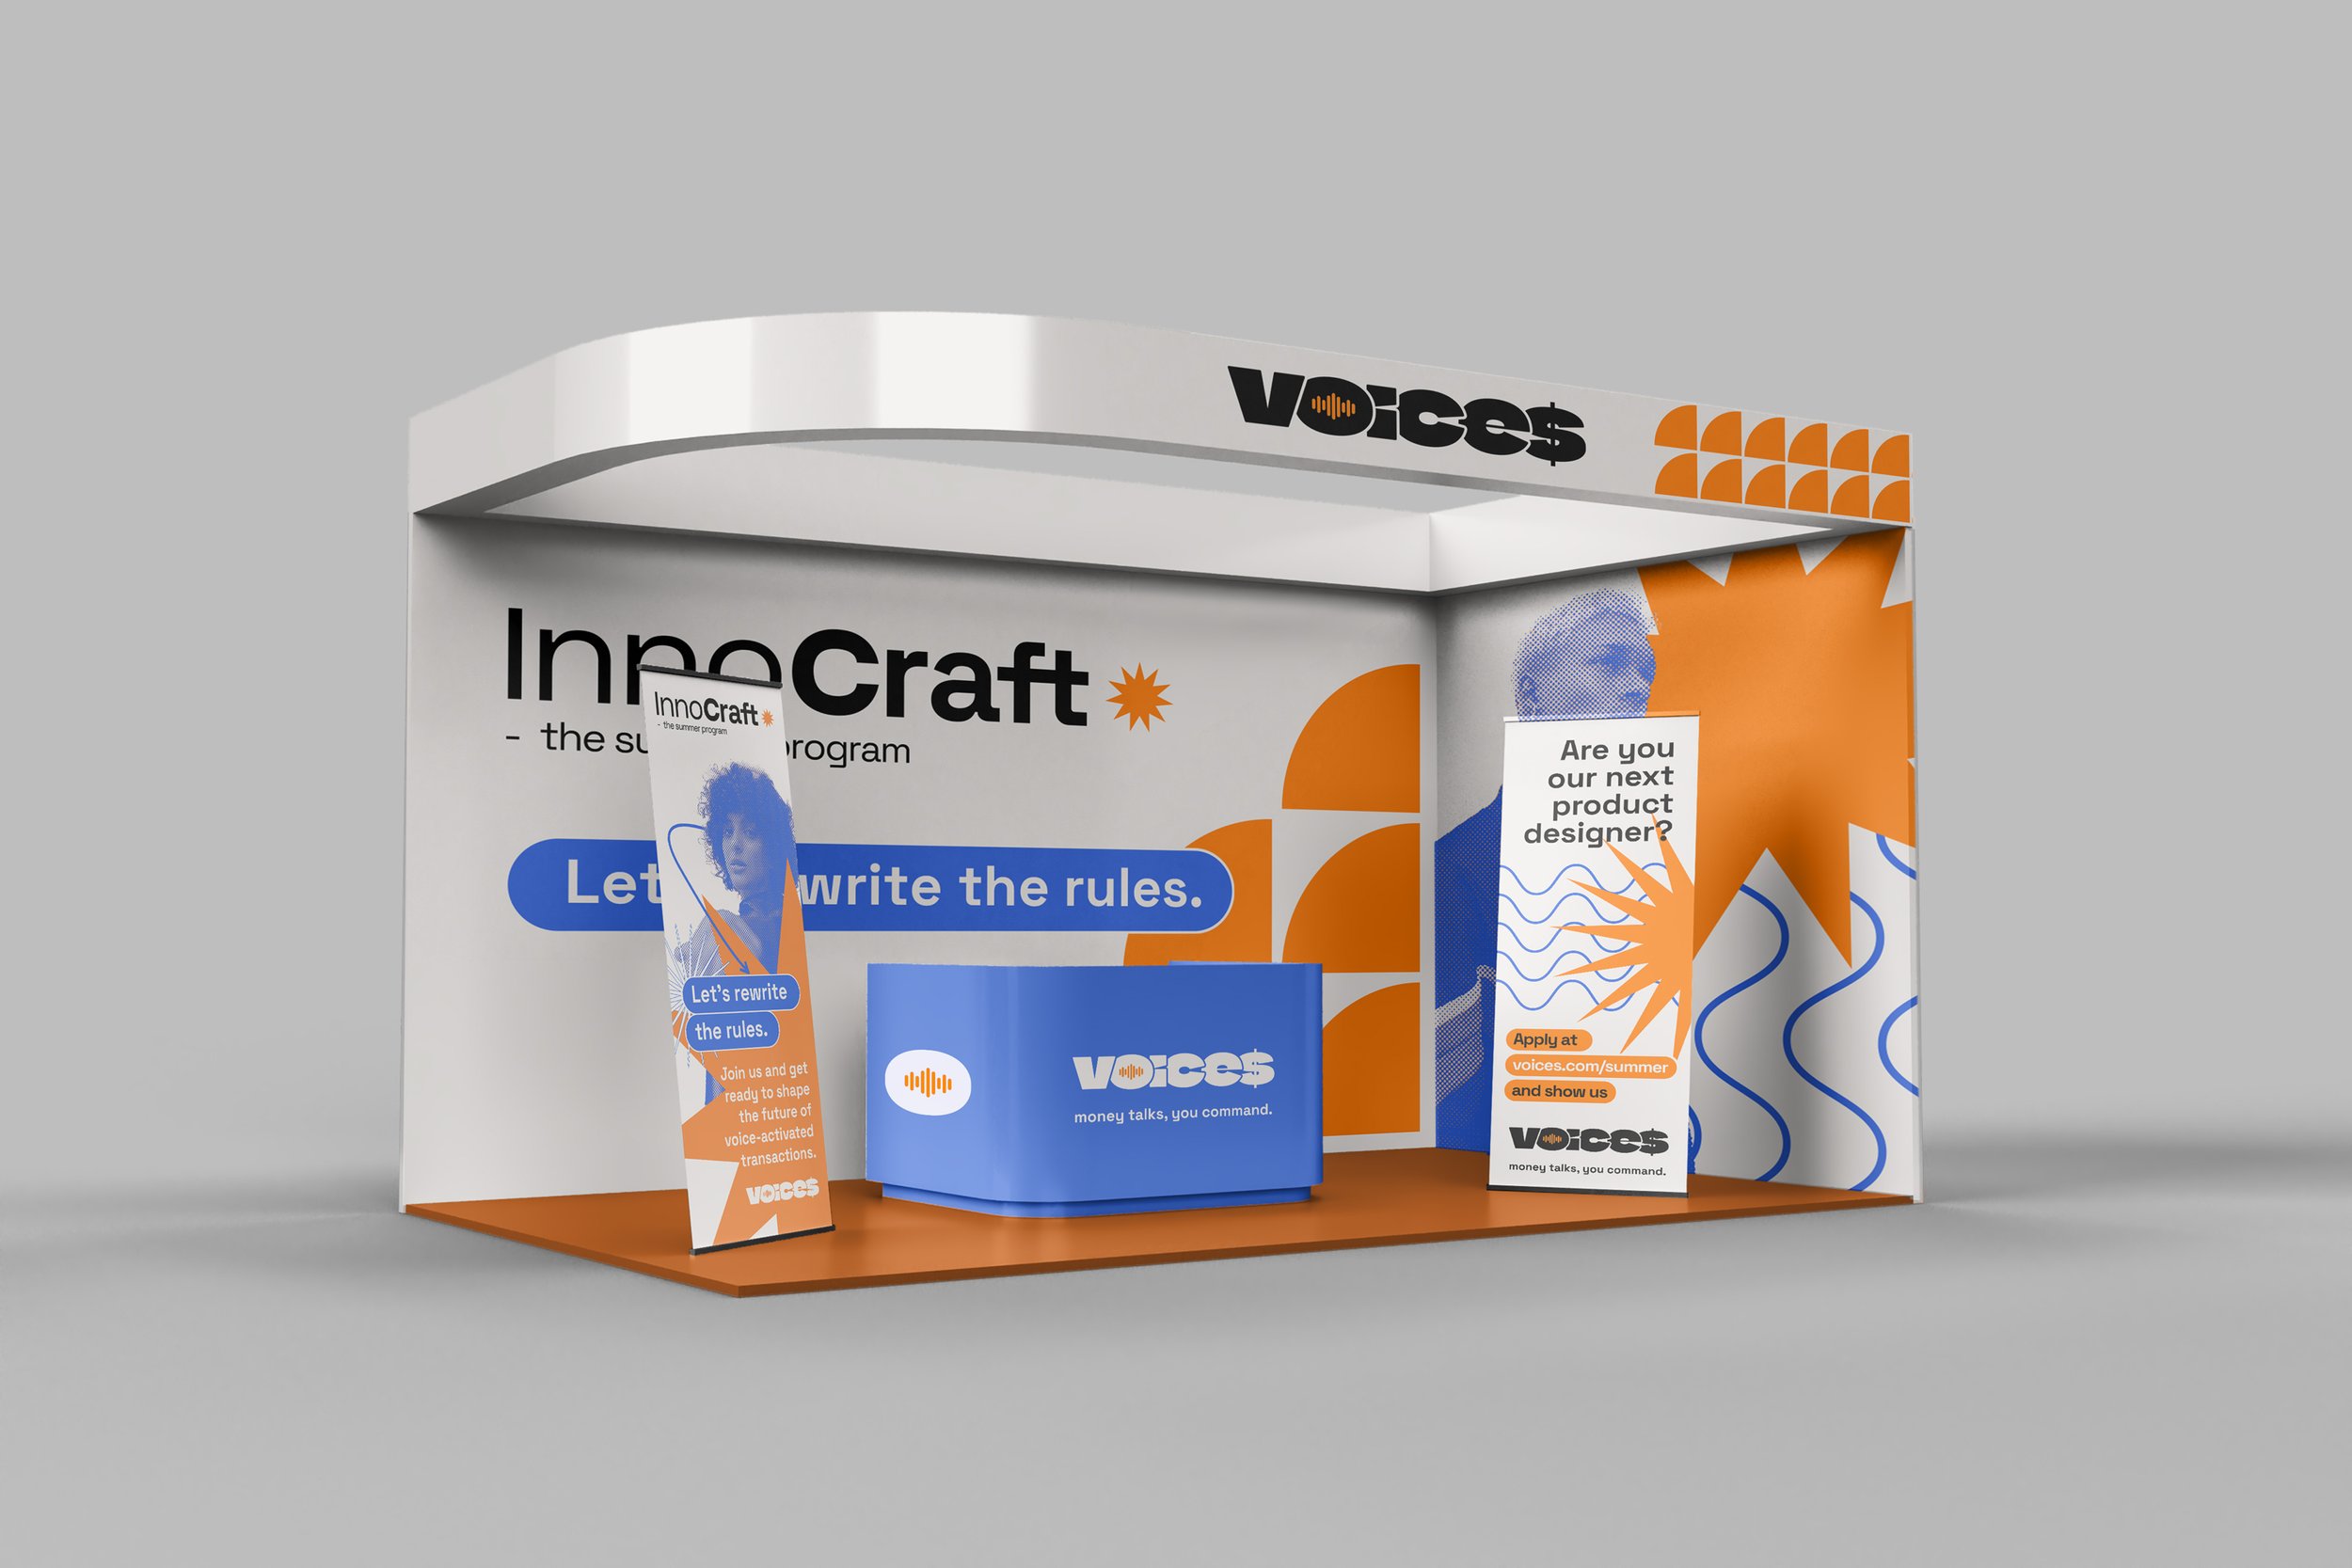 InnoCraft